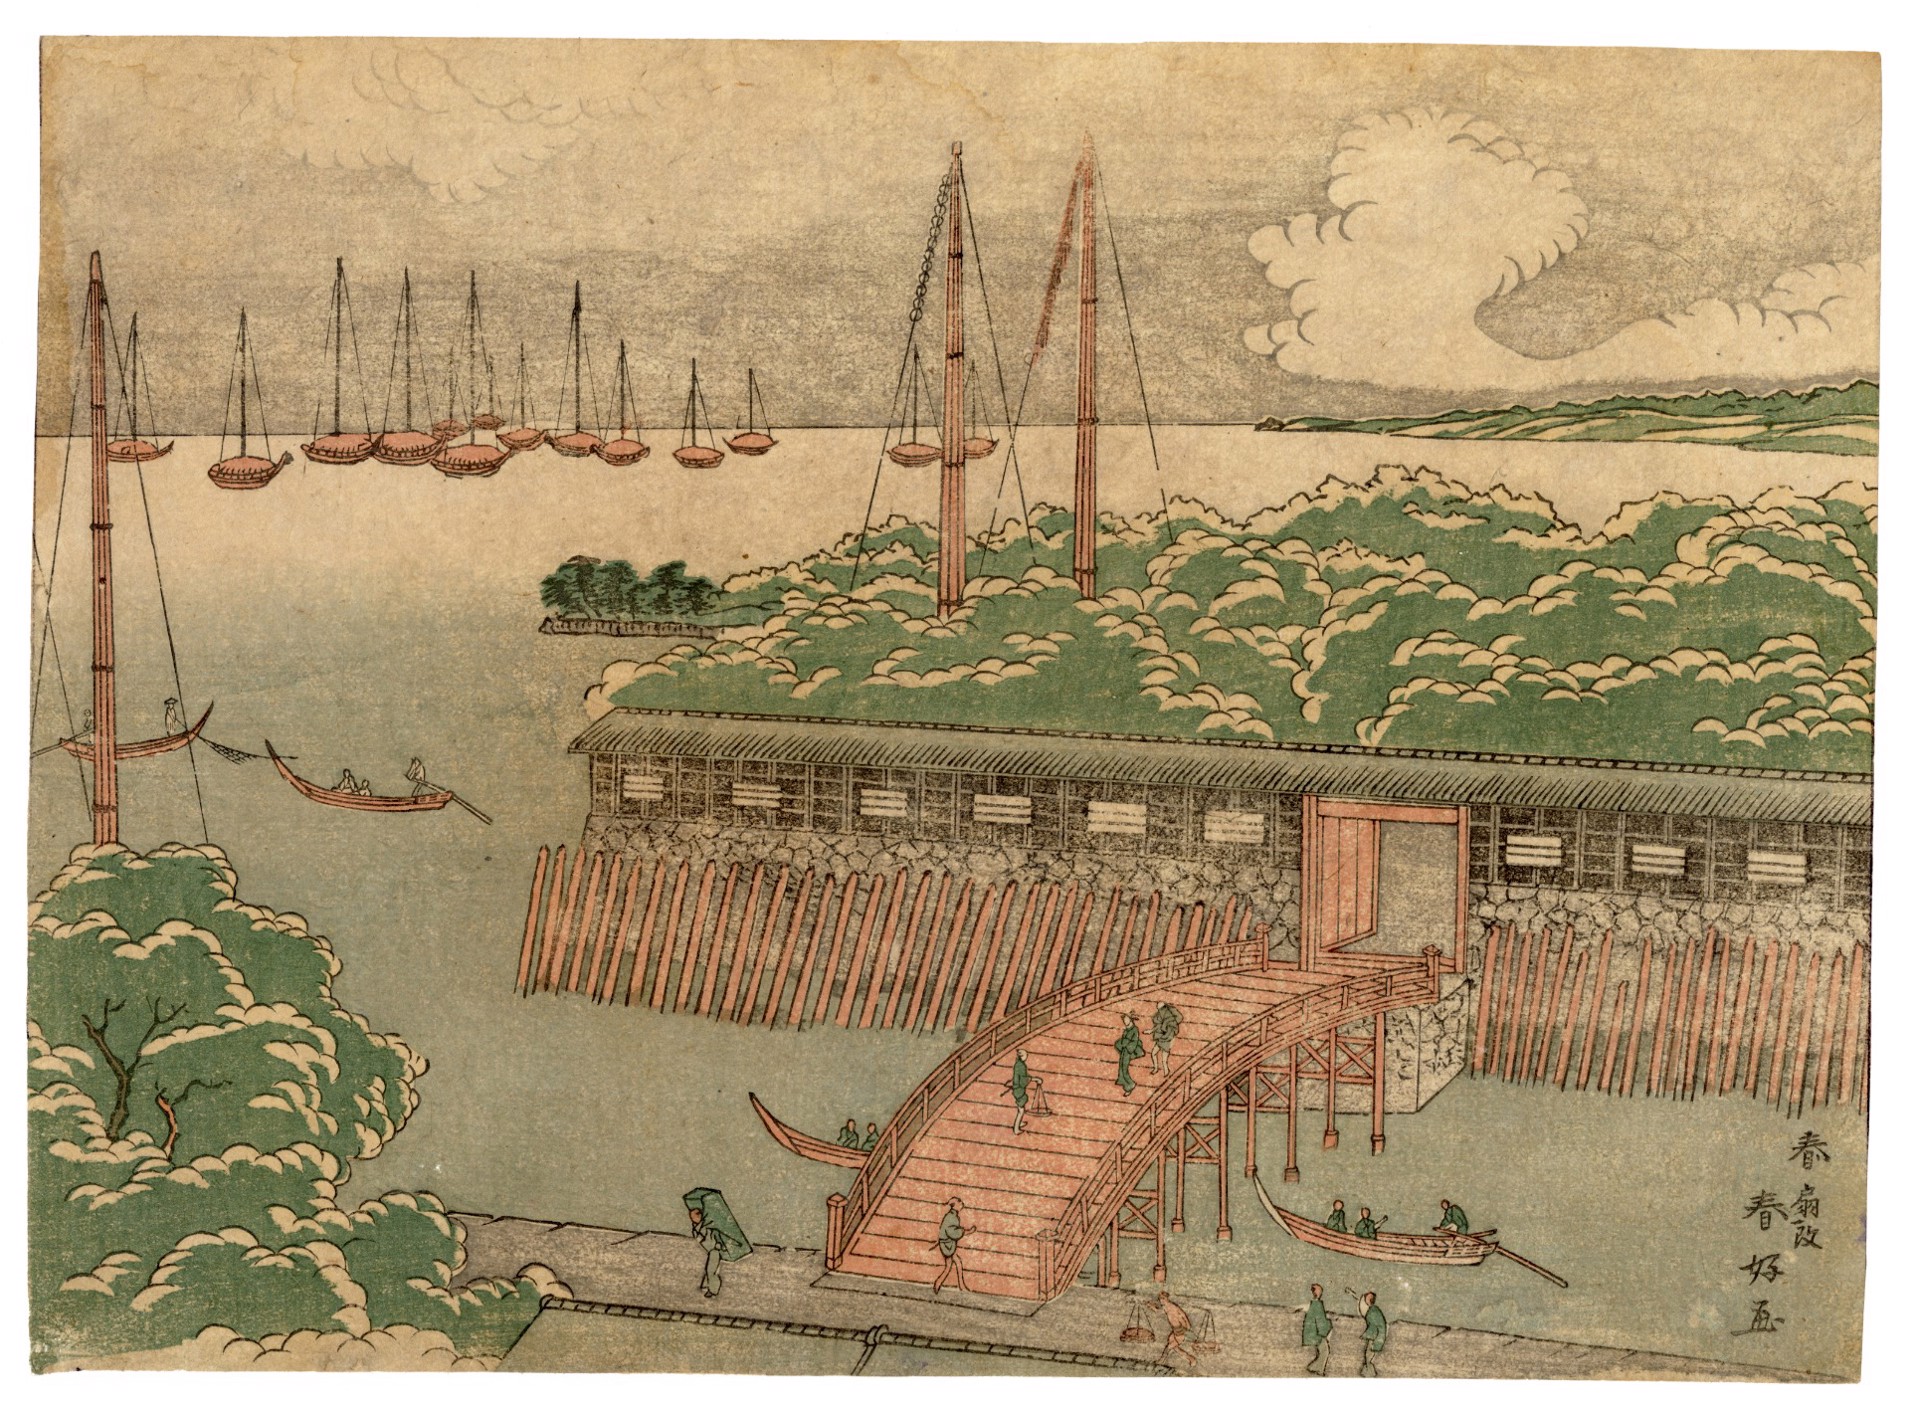 Tsukuda Island by Shunko II (Katsukawa Shunsen)